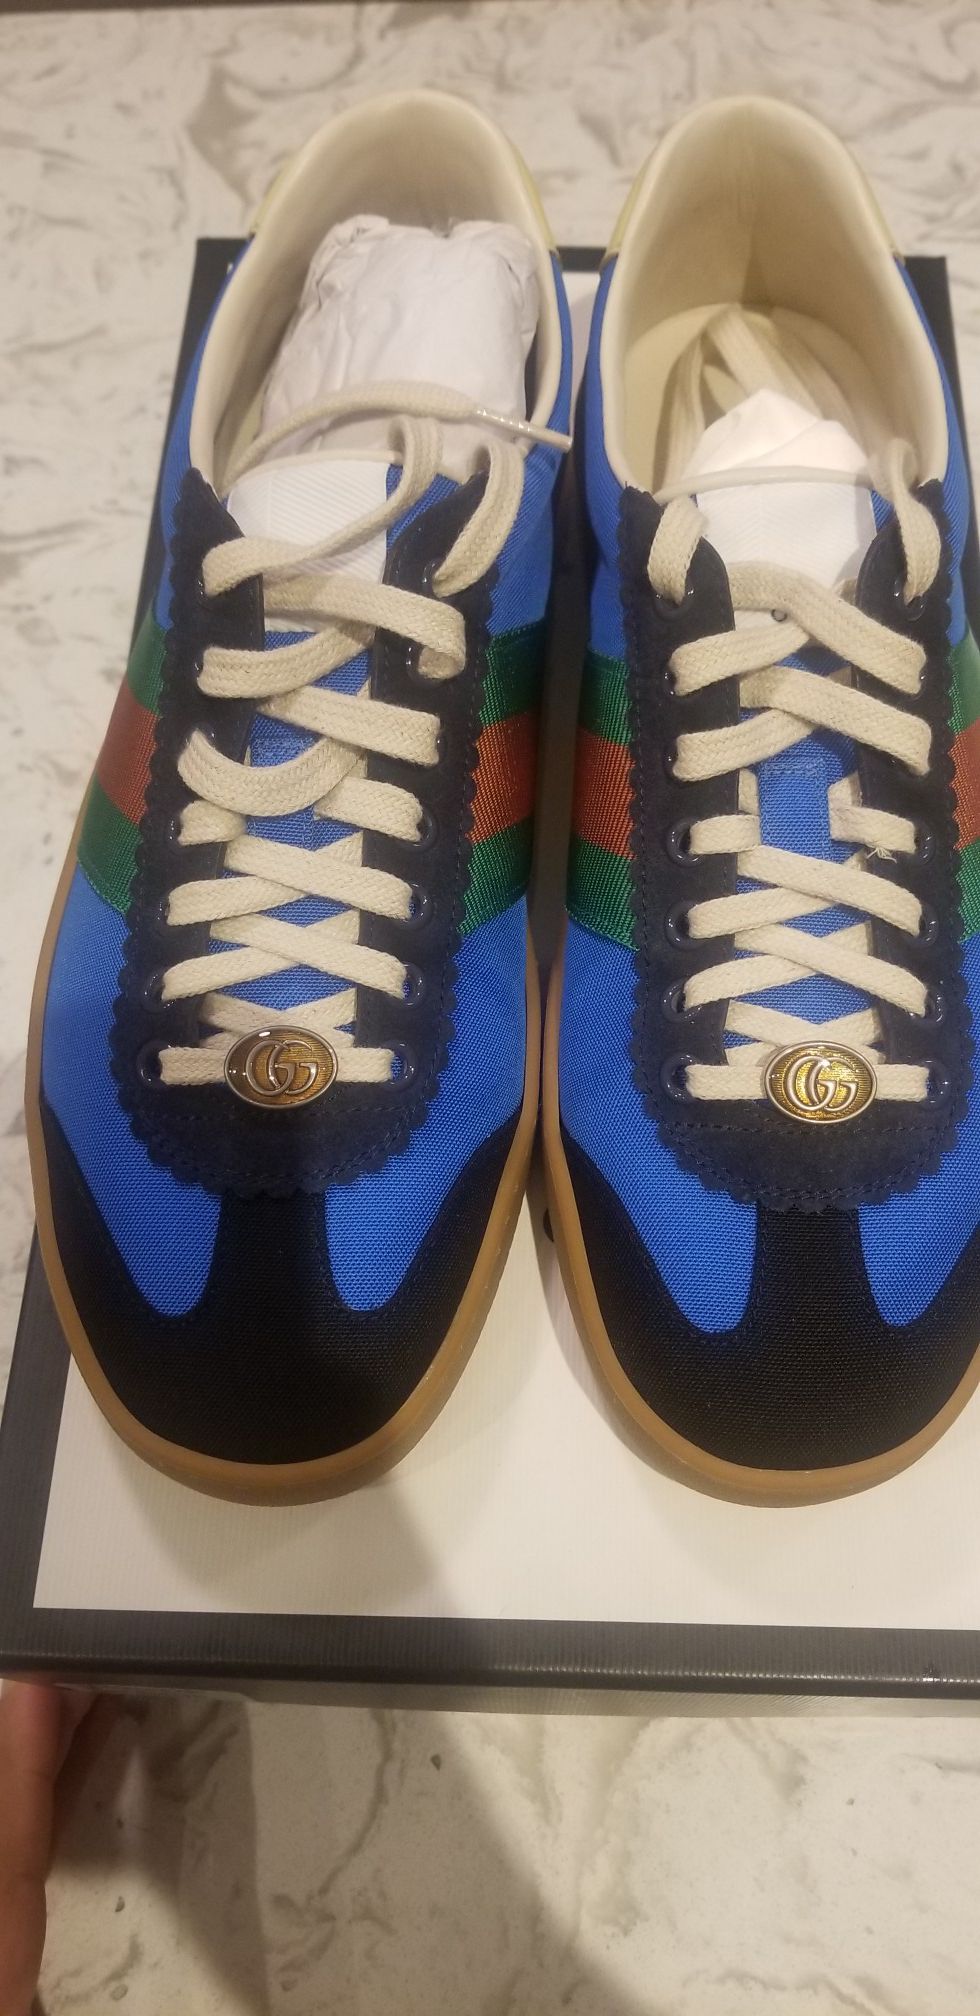 Gucci G74 Nylon Sneaker "Bright Blue" Size 9 Men